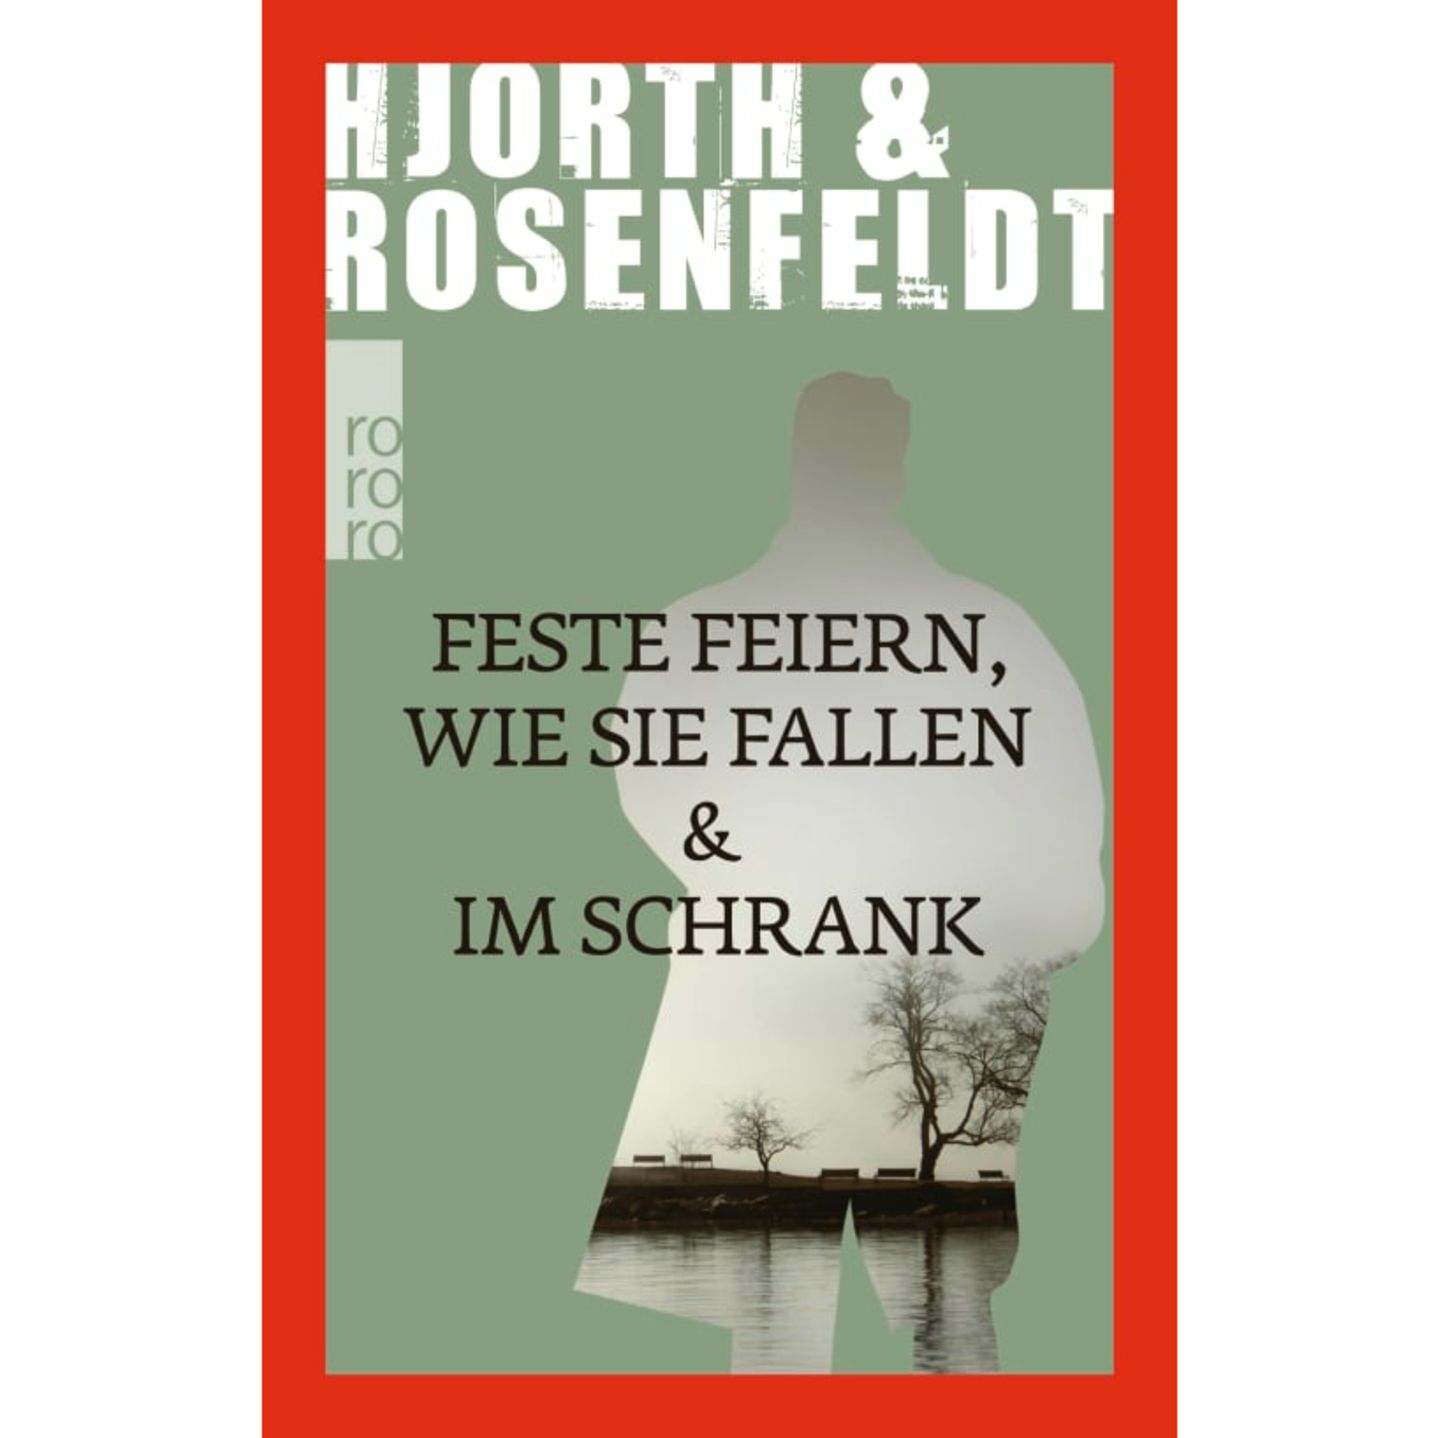 Hjorth & Rosenfeldt: Feste feiern, wie sie fallen & Im Schrank